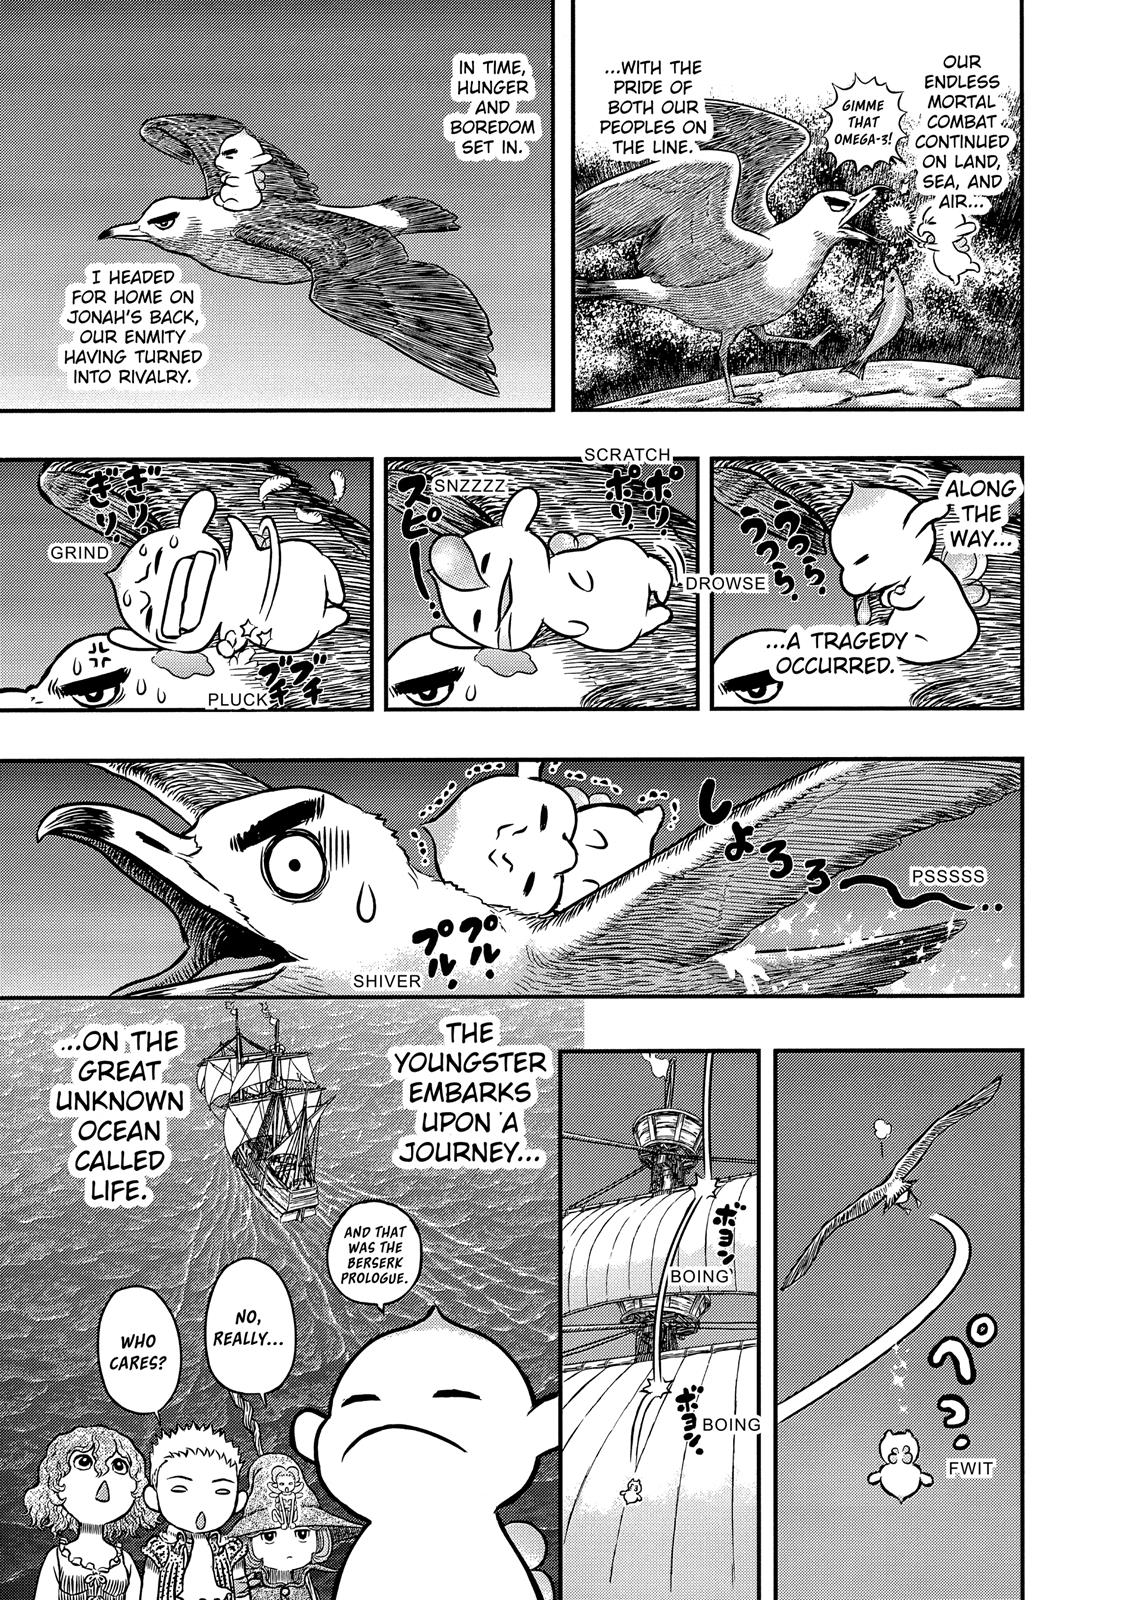 Berserk Manga Chapter 342 image 07